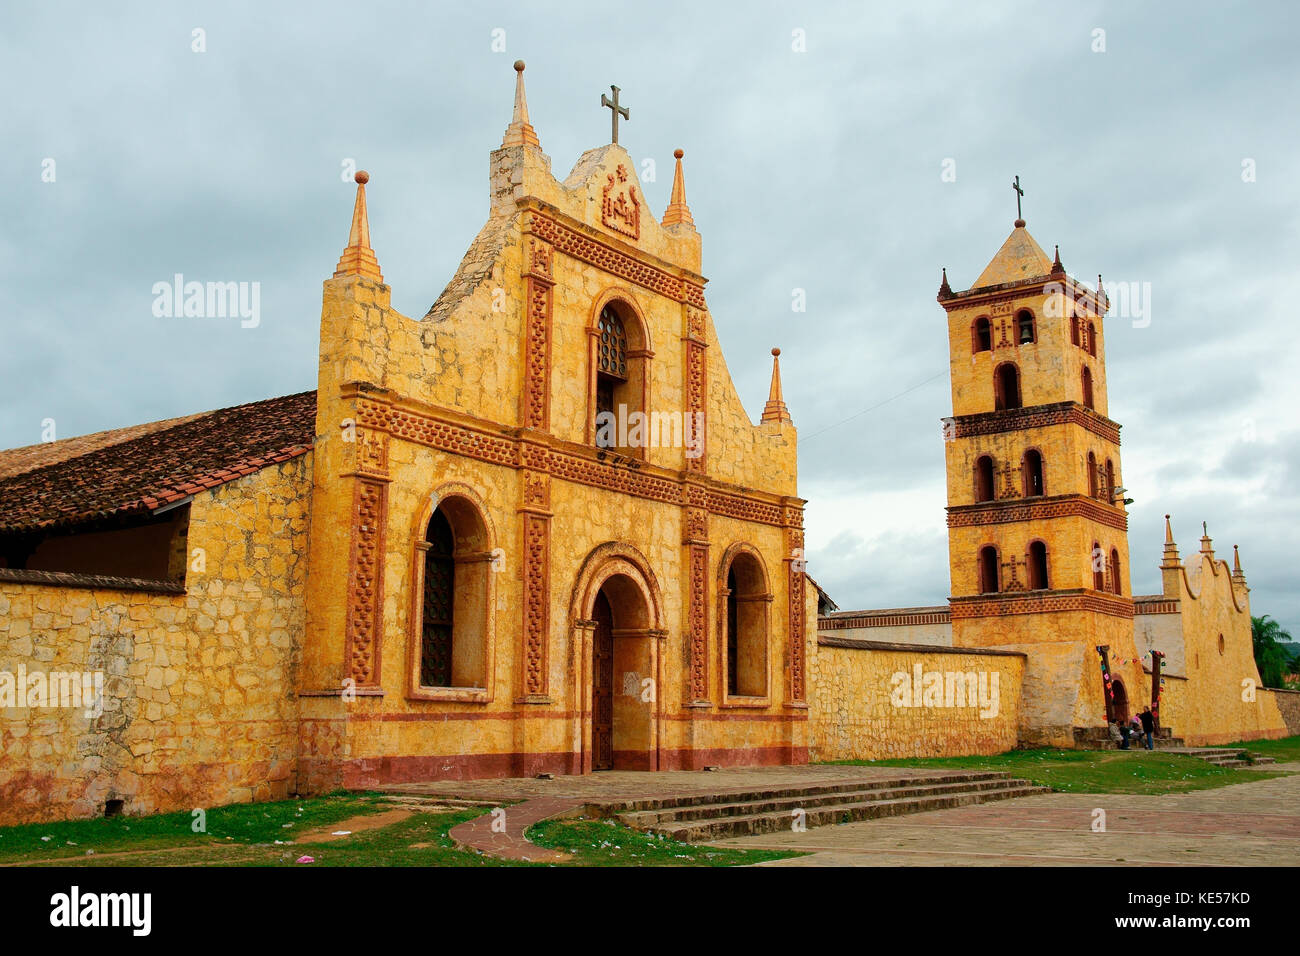 Jesuit mission, Jesuit reduction, San José de Chiquitos, Santa Cruz, Bolivia Stock Photo